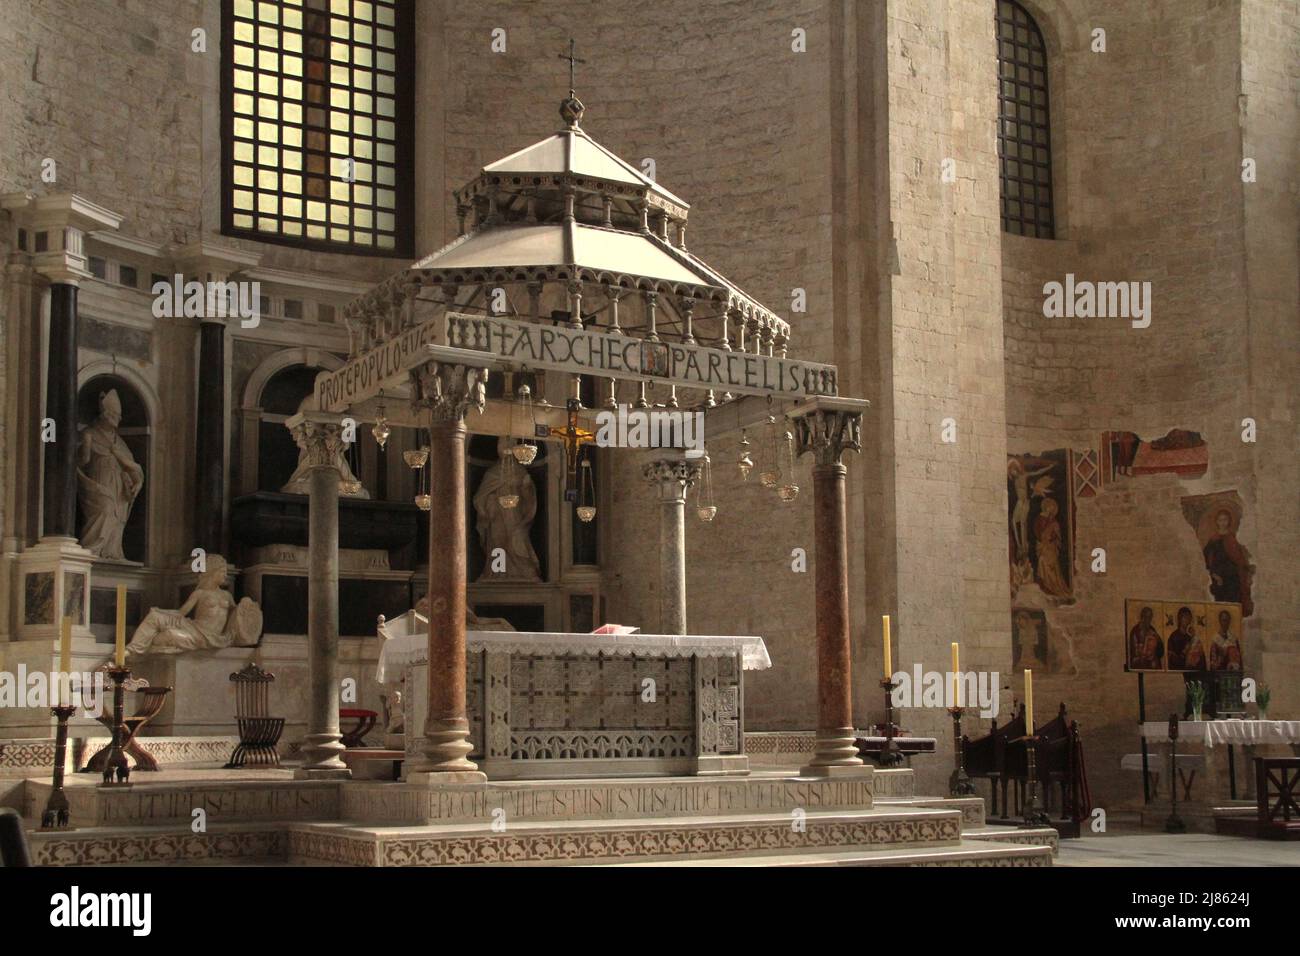 Bari, Italia. El hermoso altar mayor de la Basílica Pontificia de San Nicolás (Basílica de San Nicola, n. 11th). Foto de stock